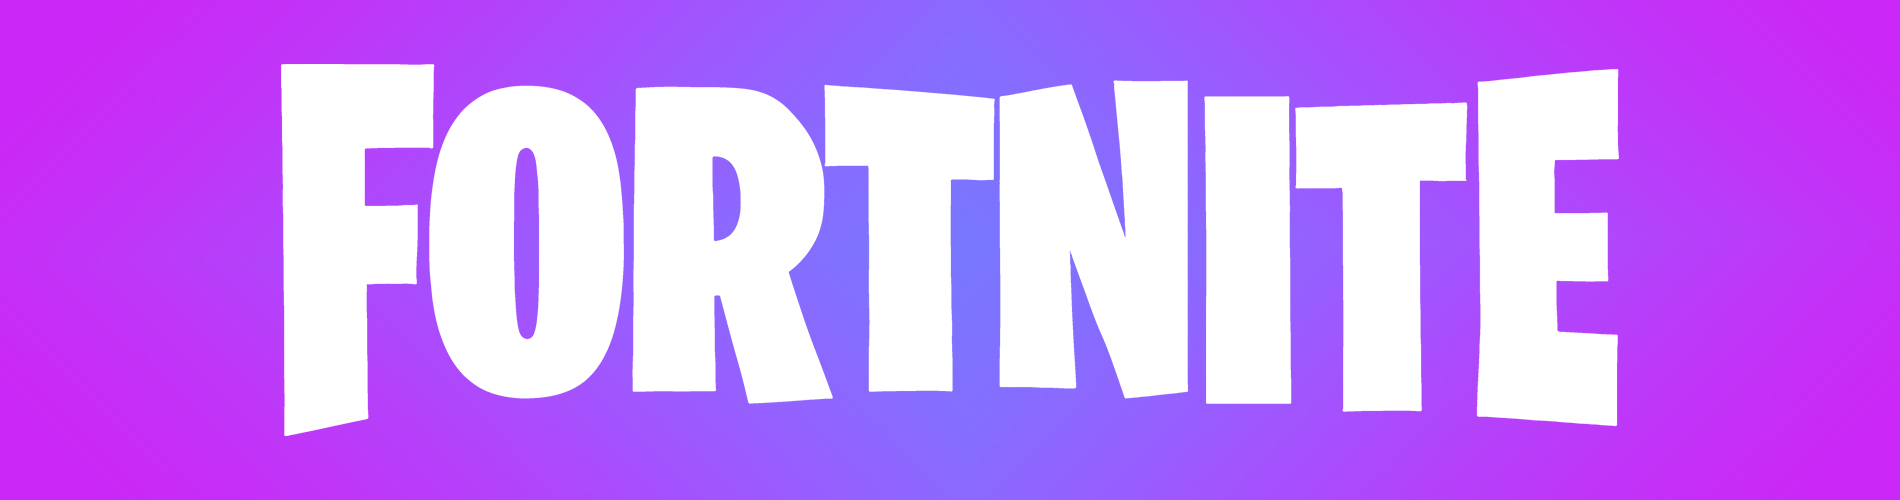 Banner Fortnite - Desktop